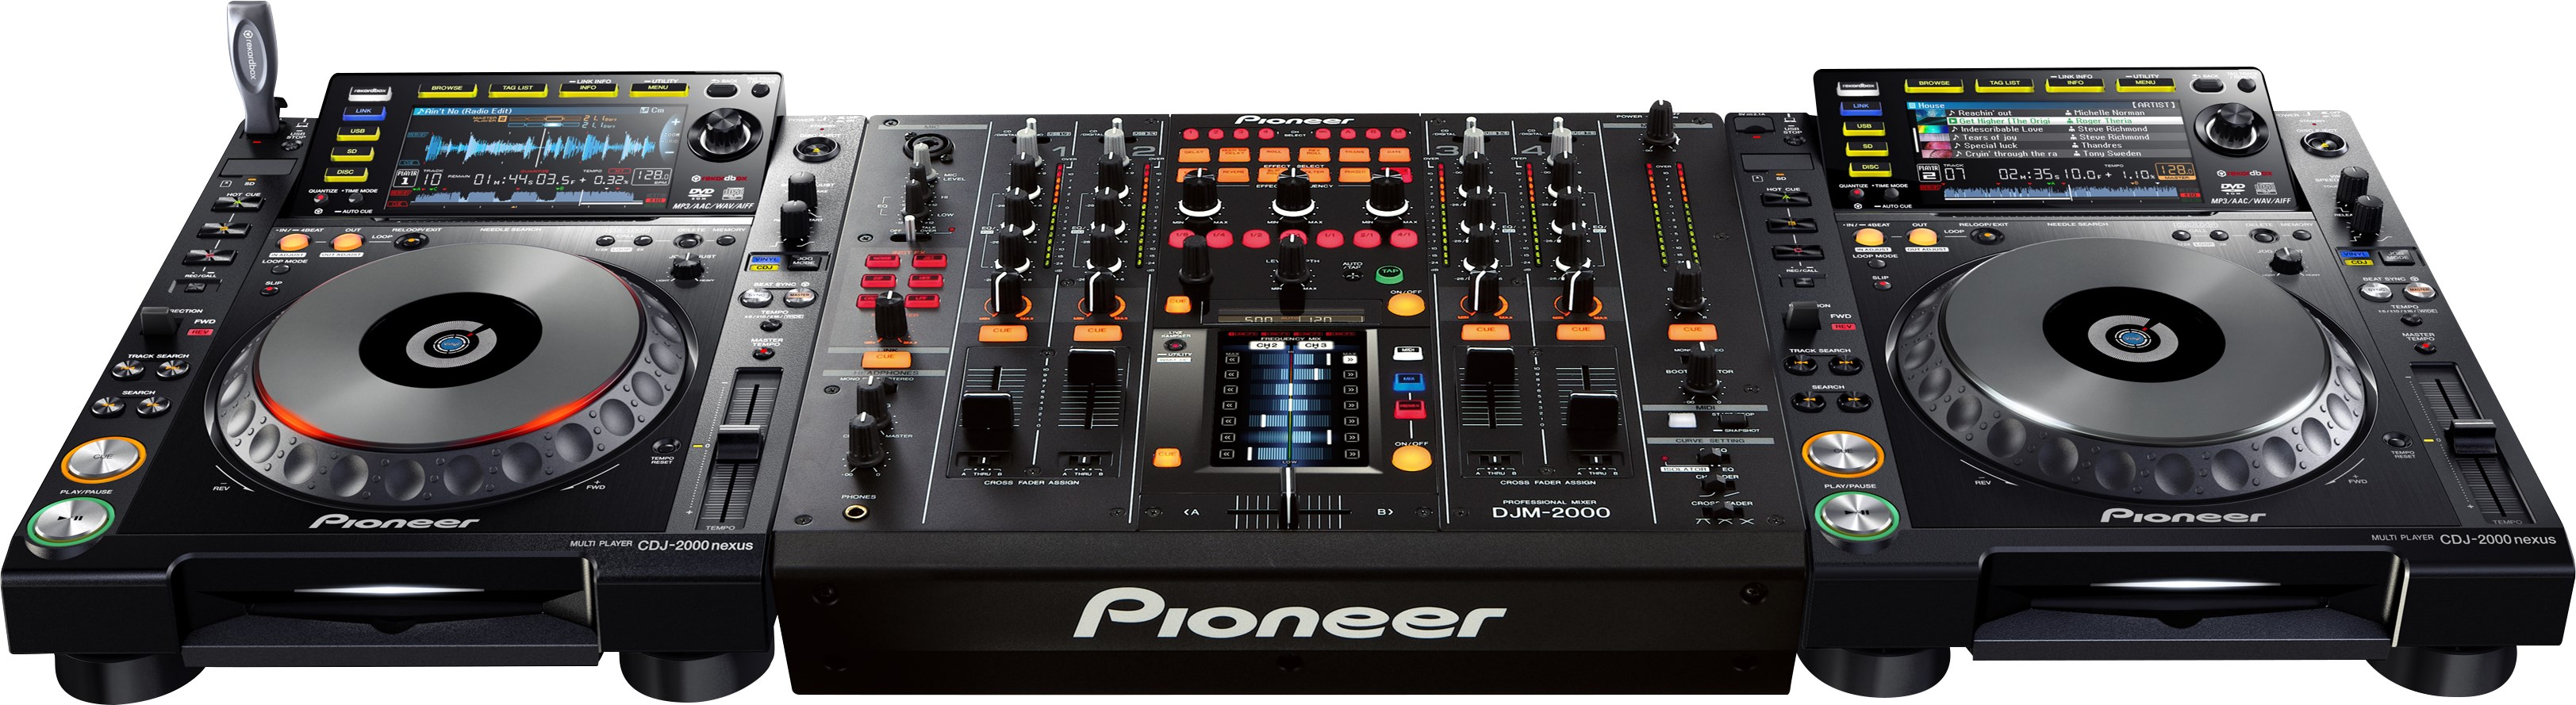 Pioneer Dj Djm2000nexus - DJ-Mixer - Variation 3